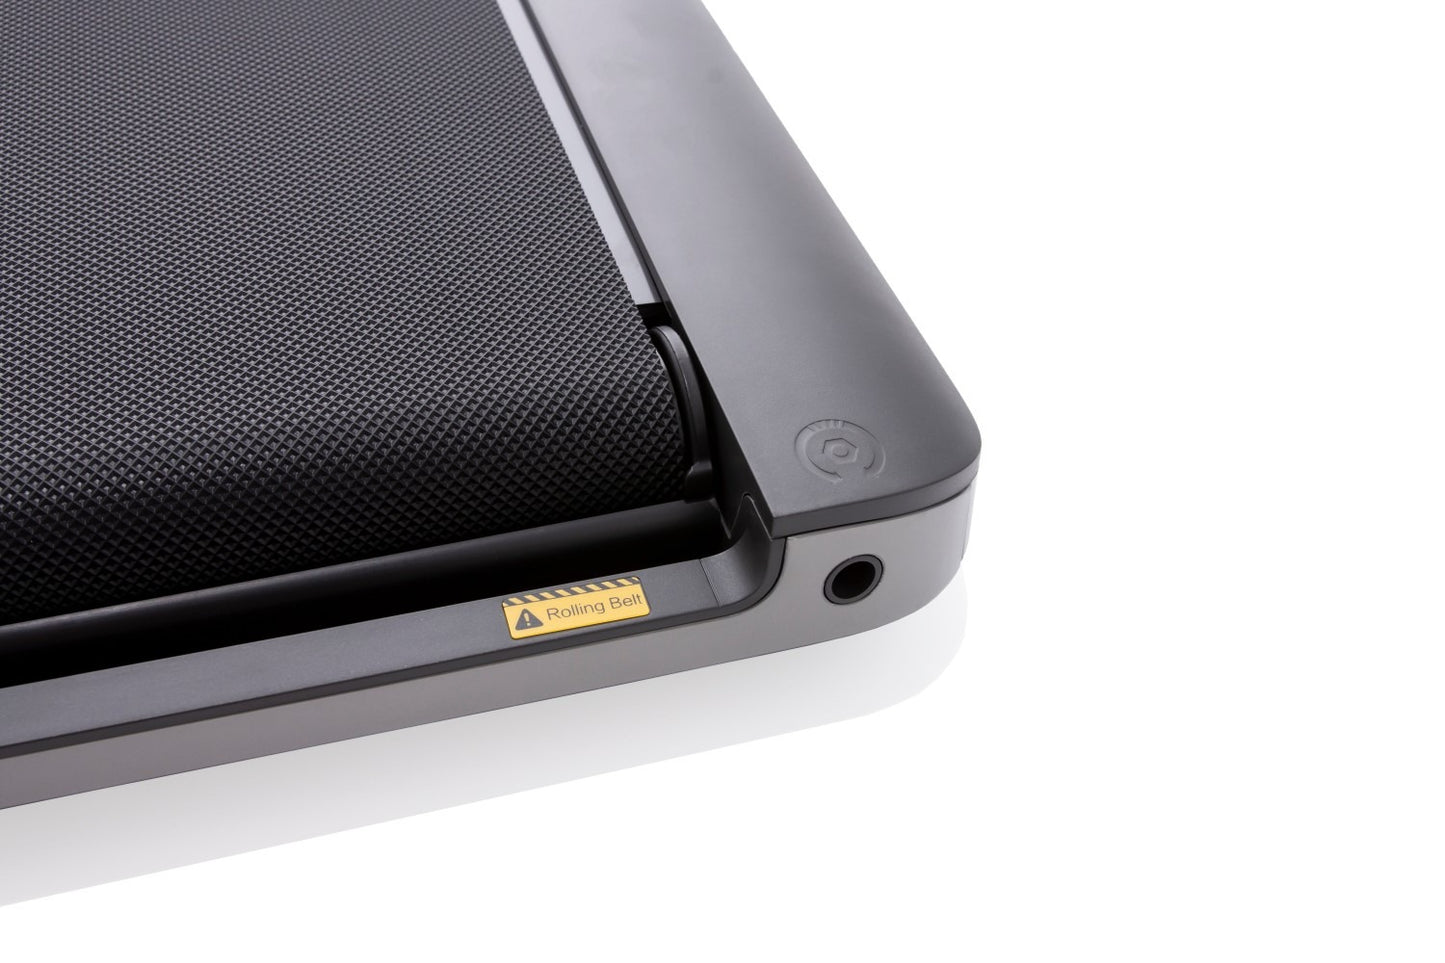 Xiaomi WalkingPad A1F Pro - Gåbånd til fleksibel motion